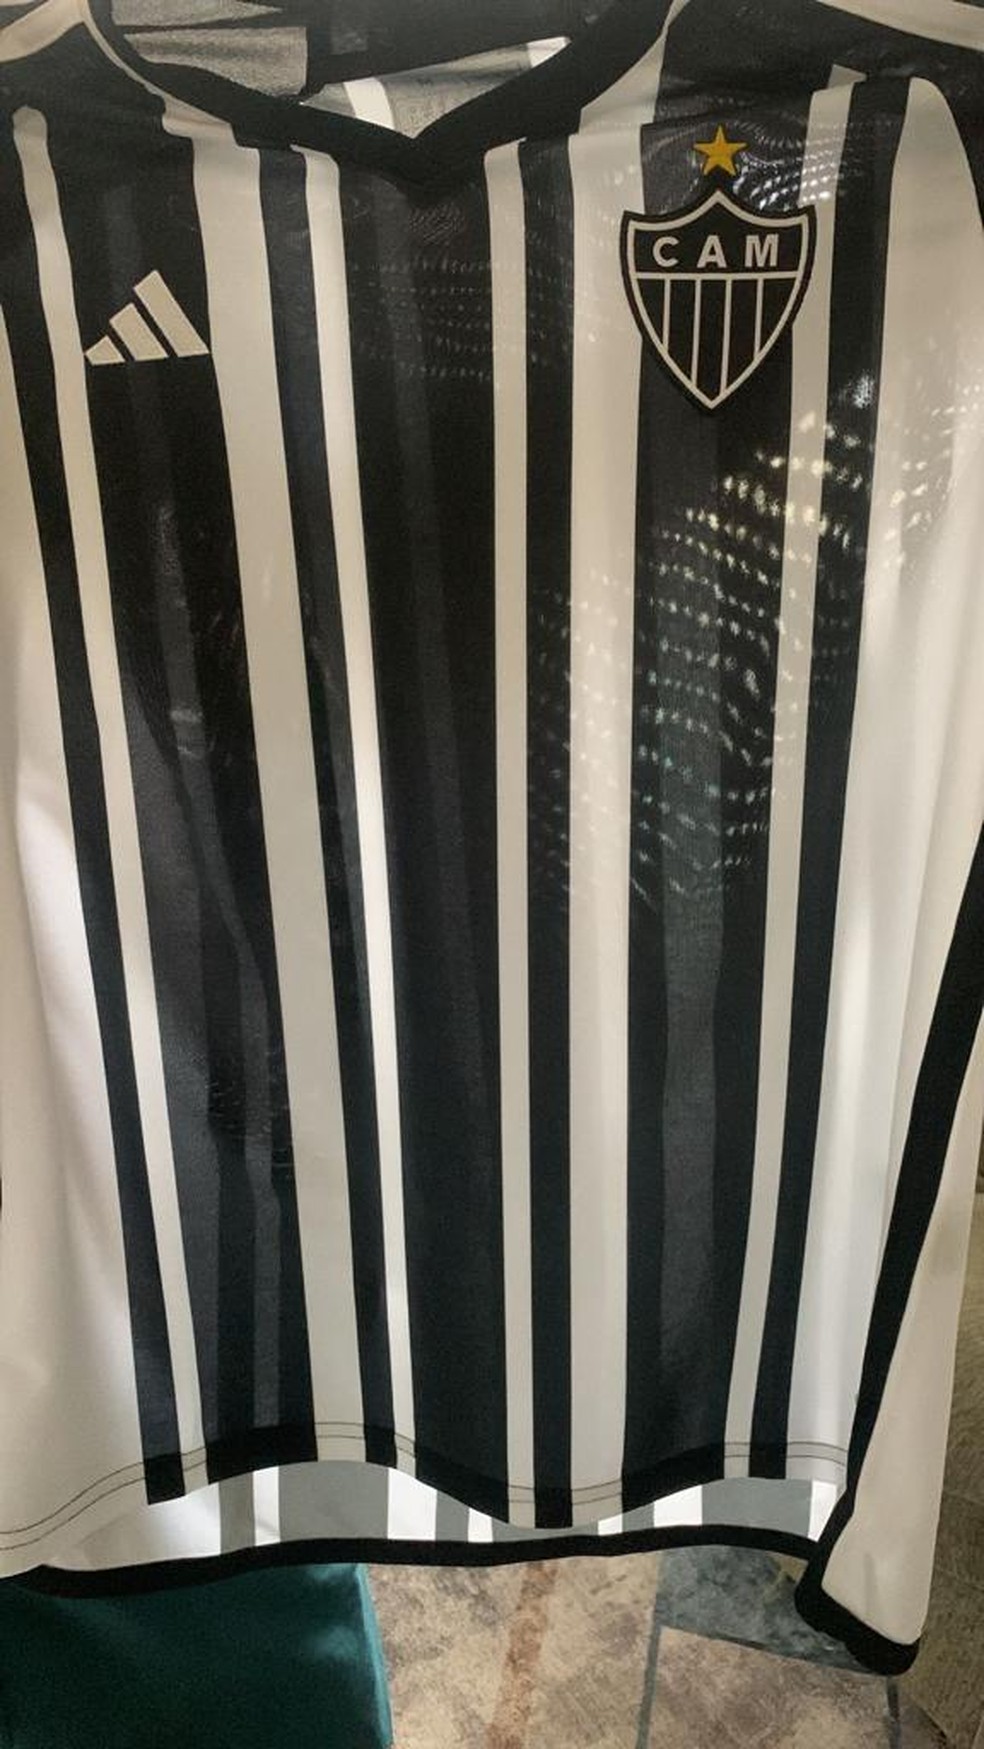 Camisa branca do Atlético Mineiro 2023-2024 tem imagem vazada